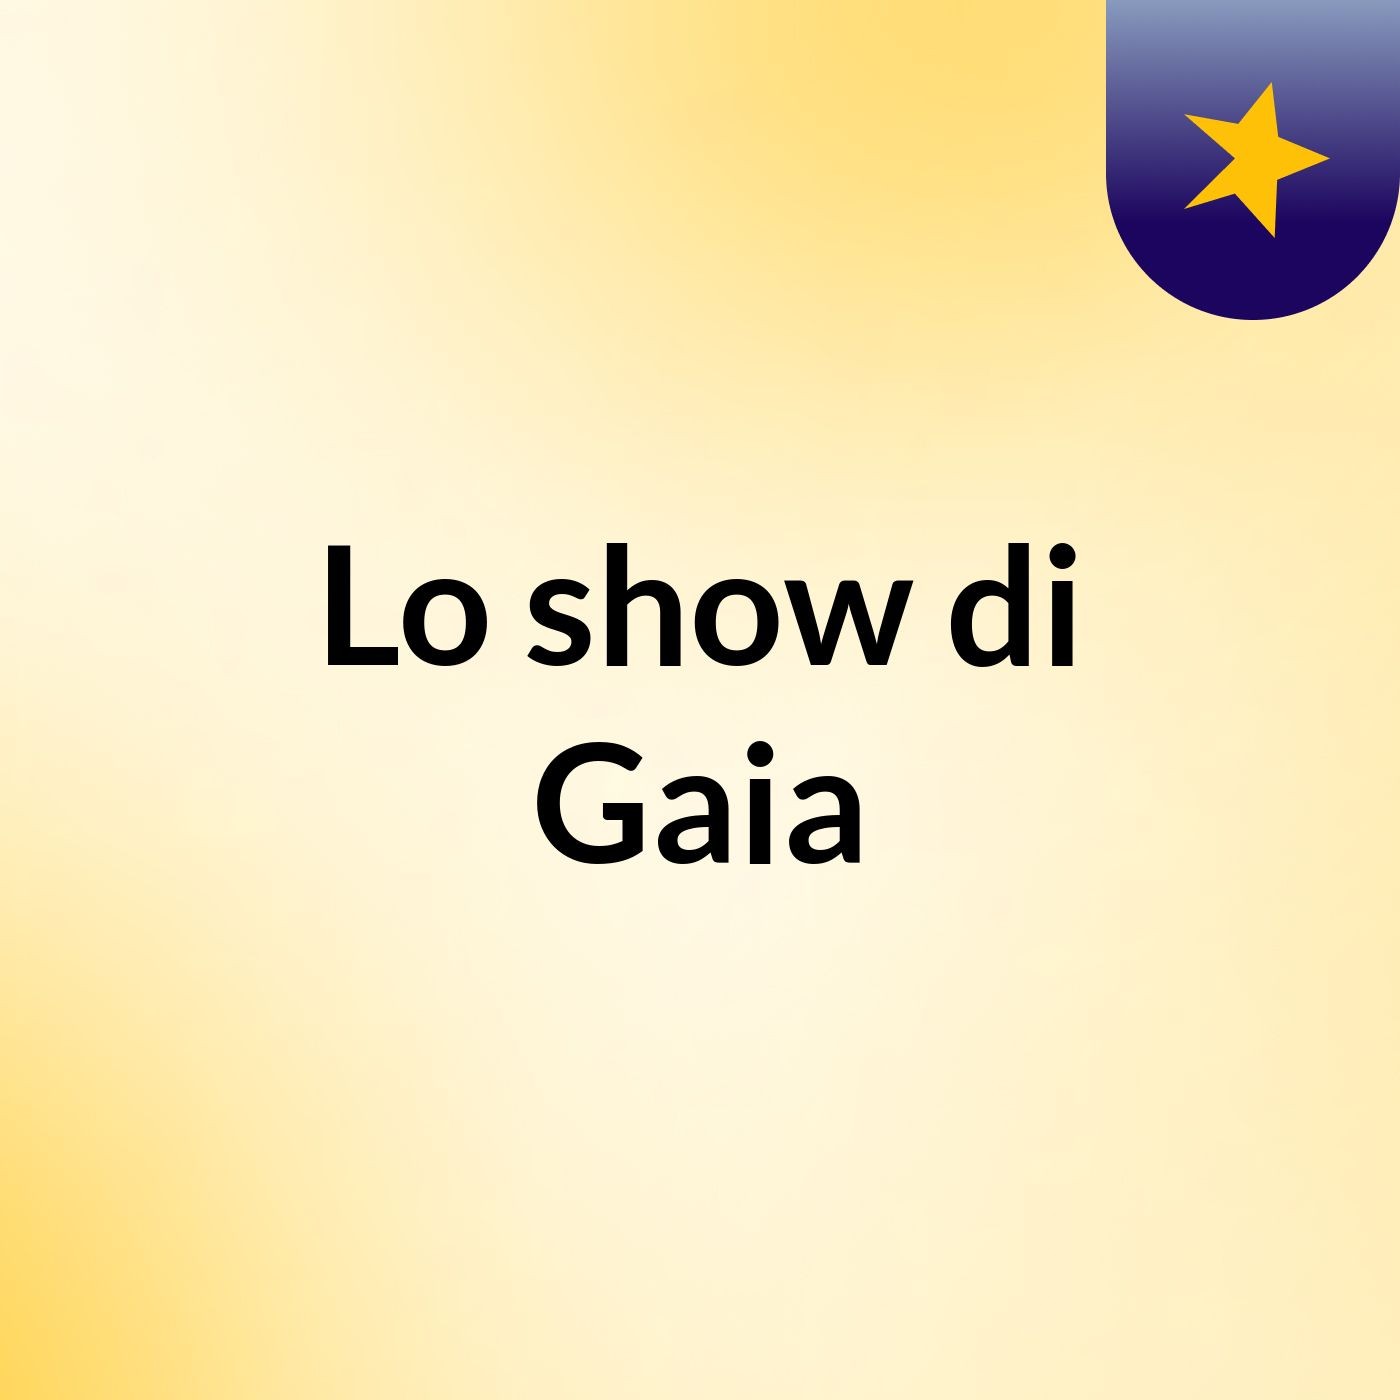 Lo show di Gaia